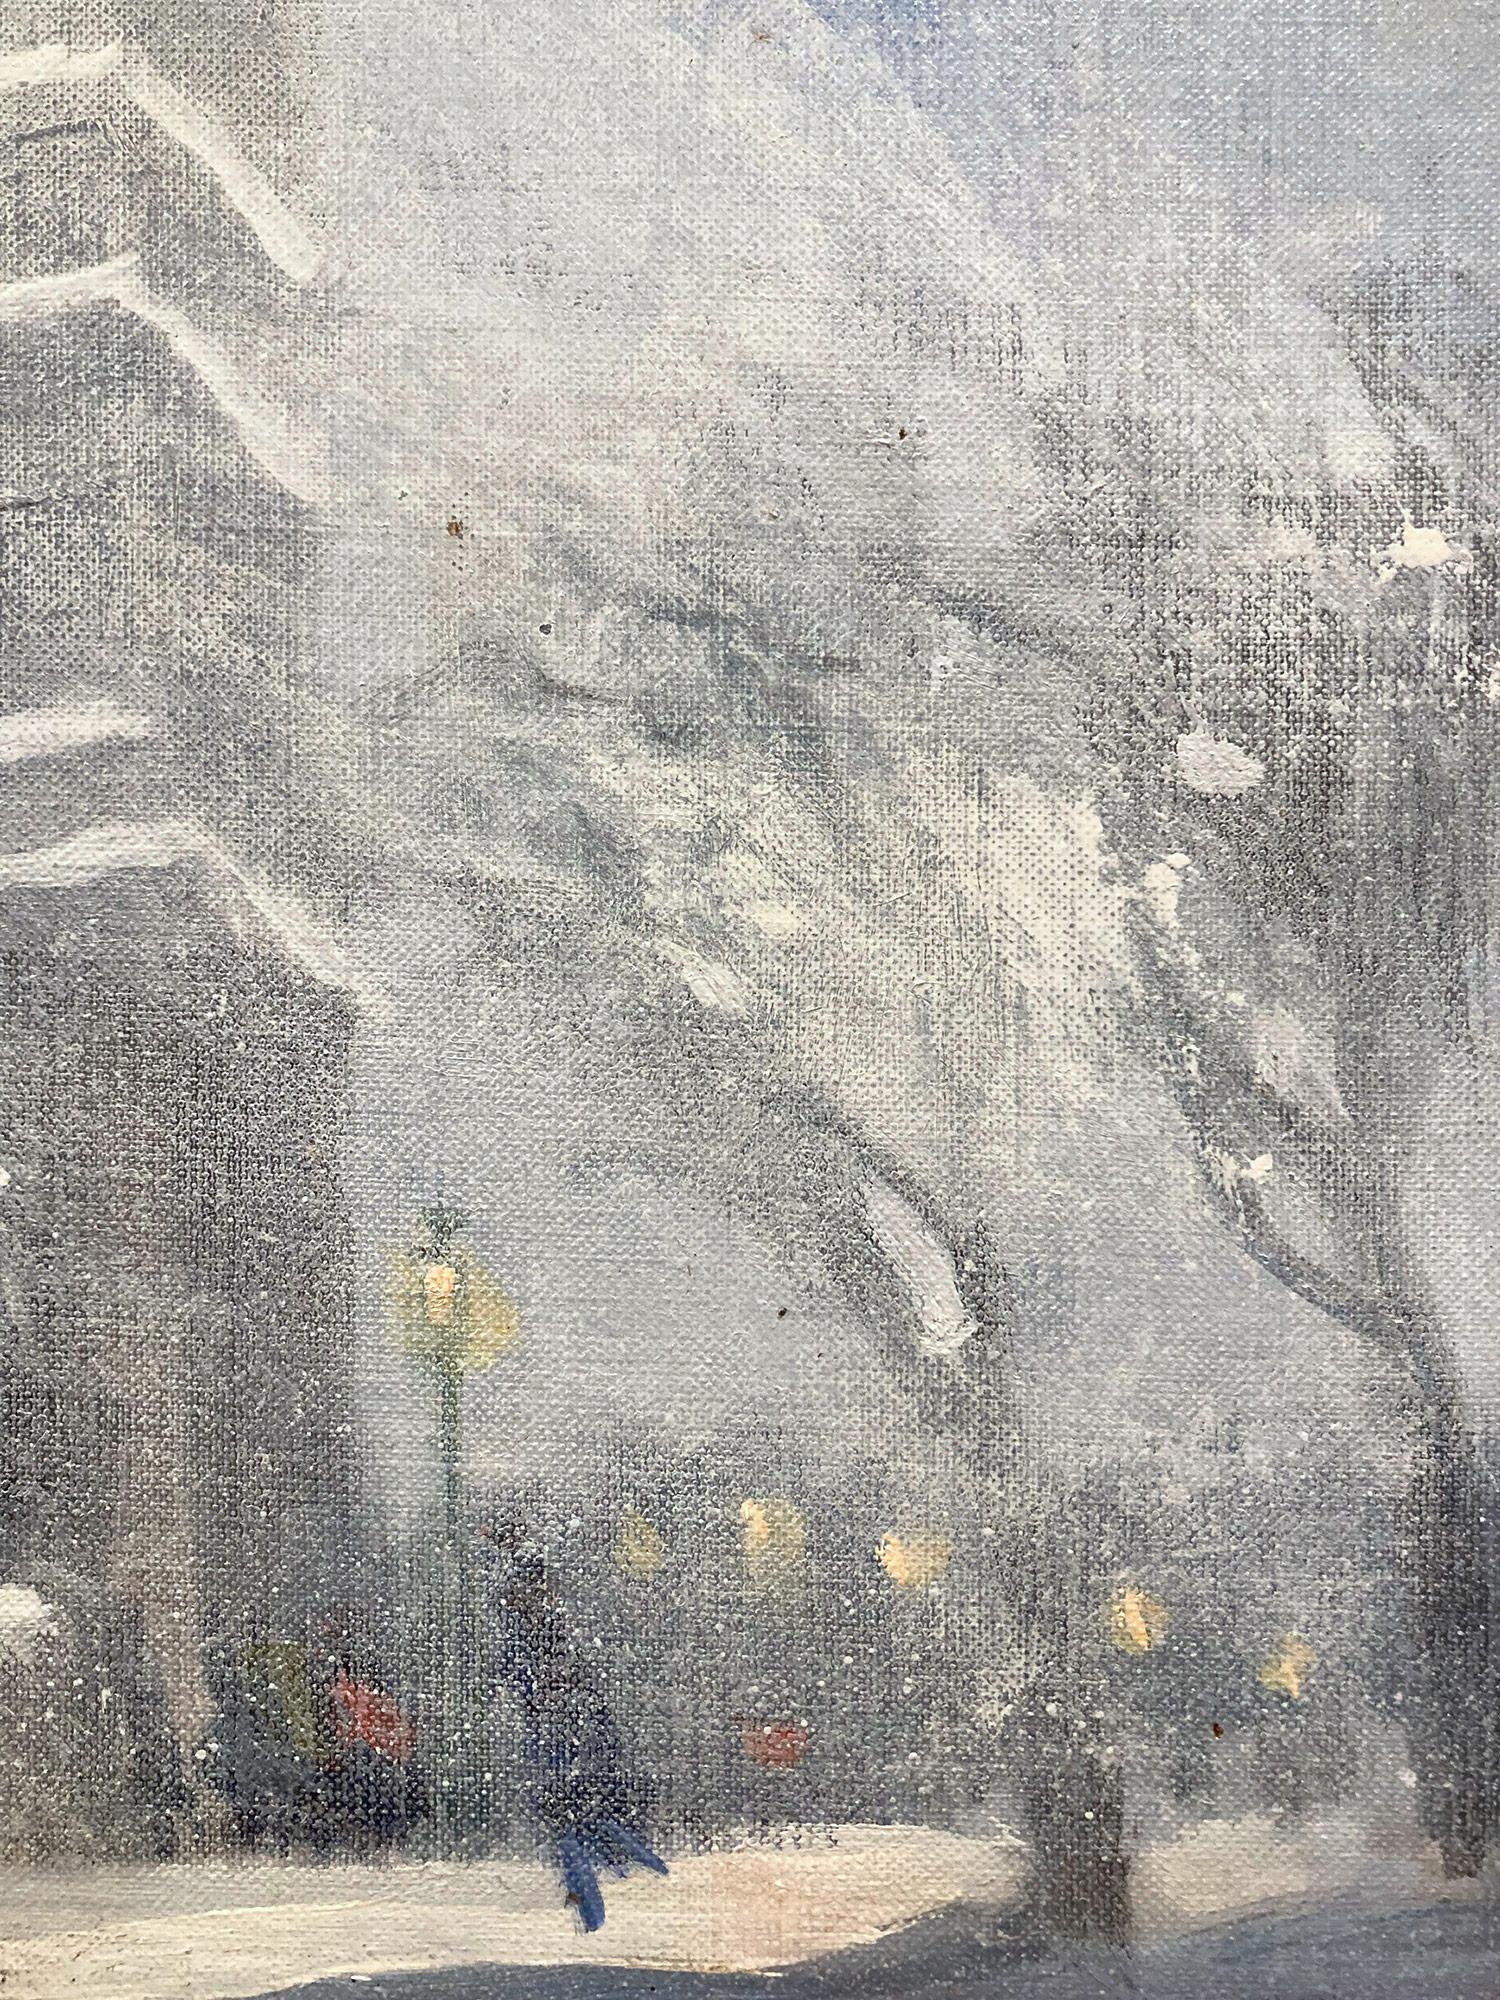 Eine charmante Darstellung des Schnees in New York City am Washington Square Park an einem kalten, verschneiten Abend mit den Lichtern der Stadt und den Gebäuden in der Ferne. Eine gemütliche impressionistische Szene mit wunderbarem Einsatz von